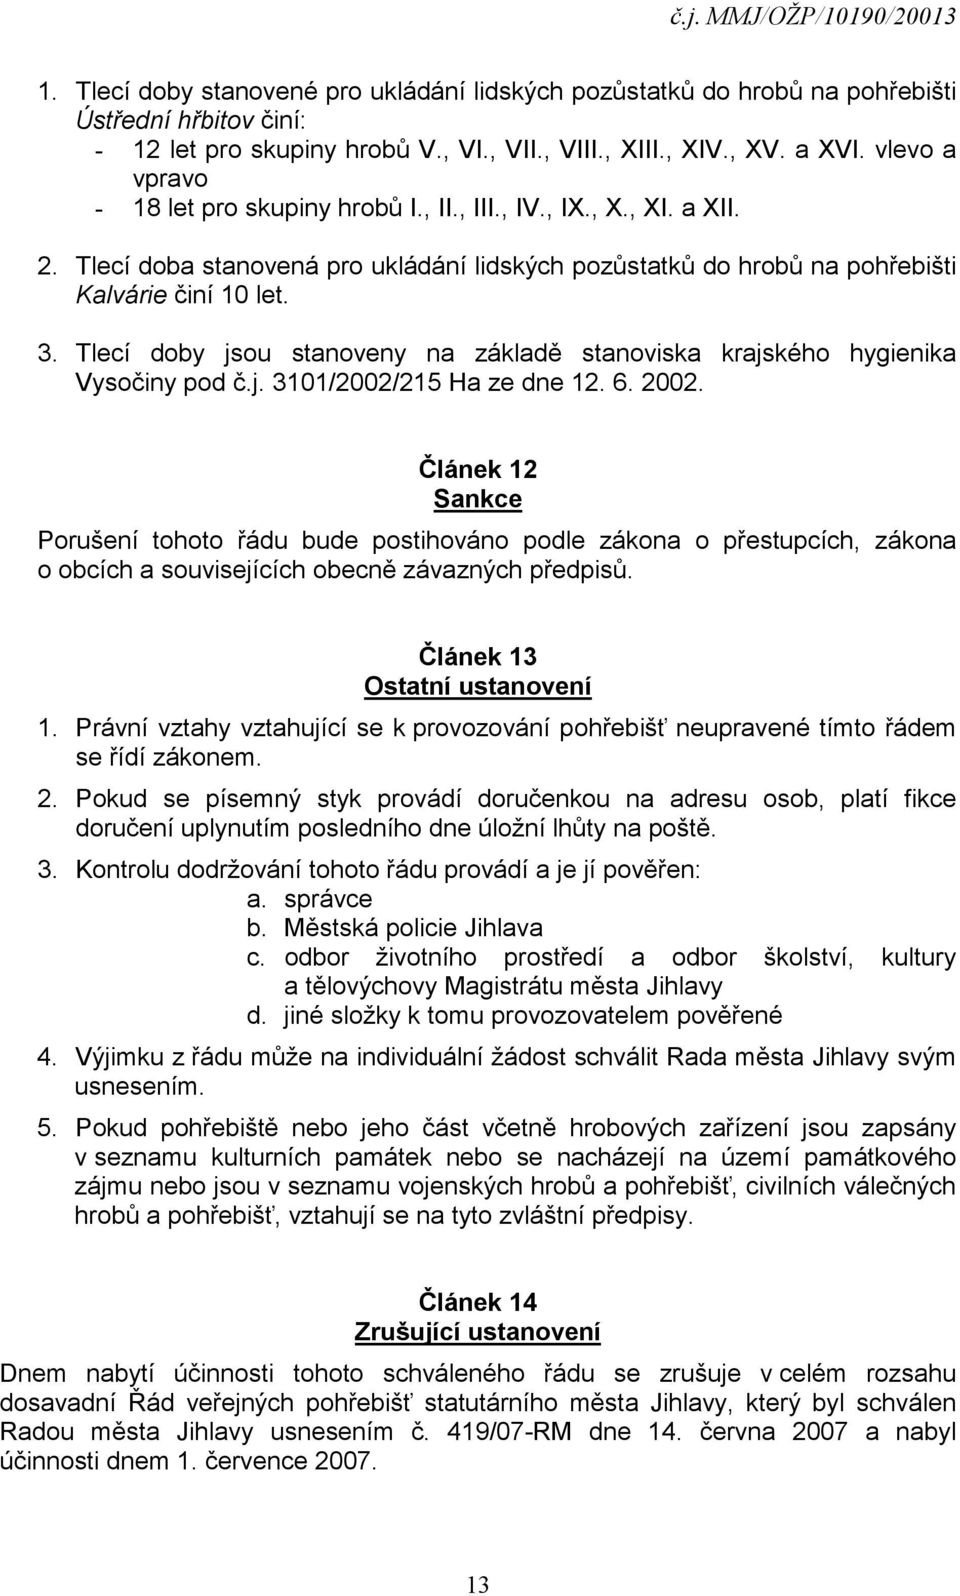 Tlecí doby jsou stanoveny na základě stanoviska krajského hygienika Vysočiny pod č.j. 3101/2002/215 Ha ze dne 12. 6. 2002.